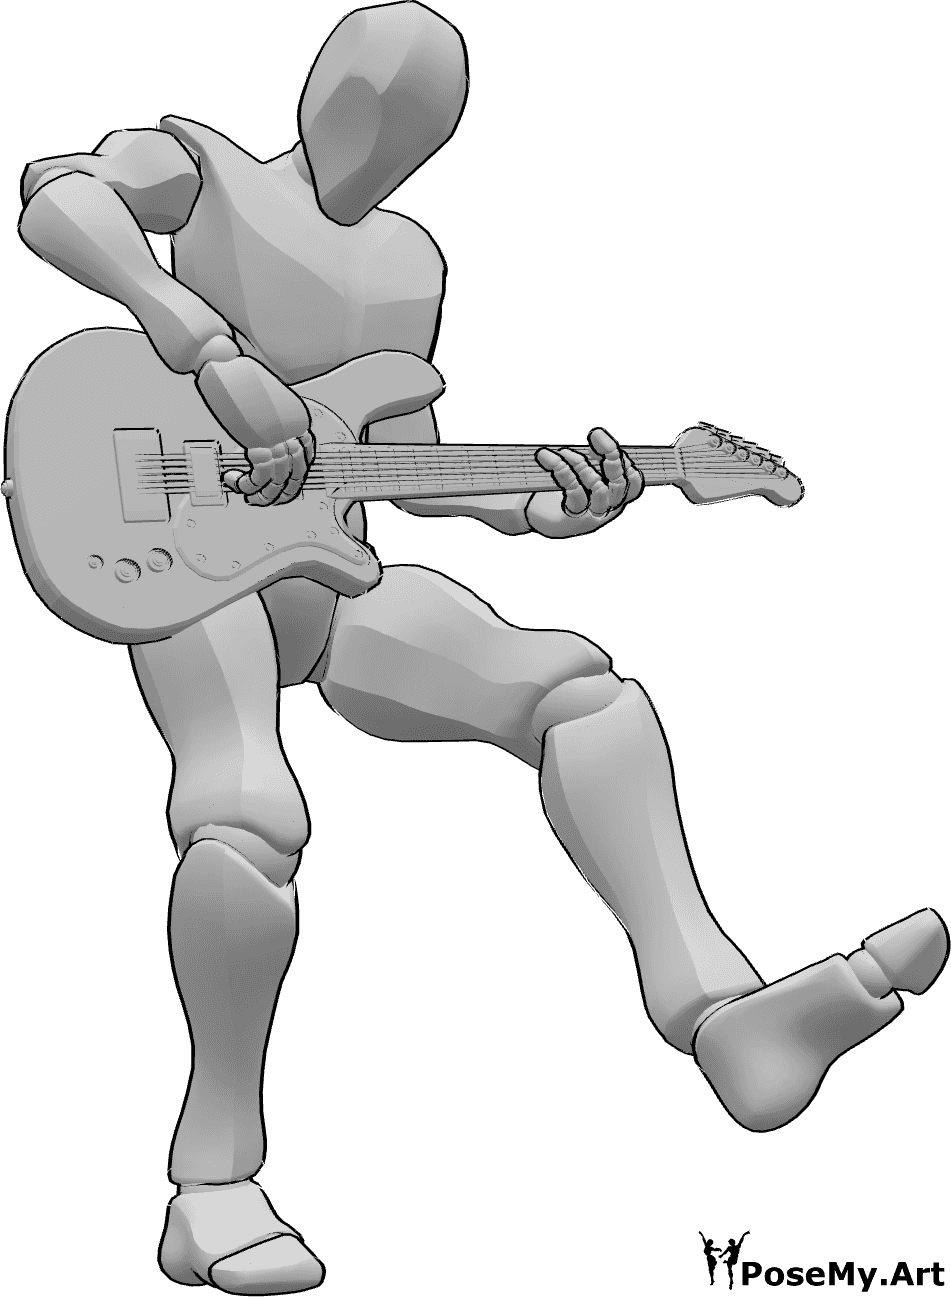 Référence des poses- Homme dansant, jouant une pose - Homme levant la jambe gauche, dansant en jouant de la guitare électrique, référence de dessin de guitare électrique